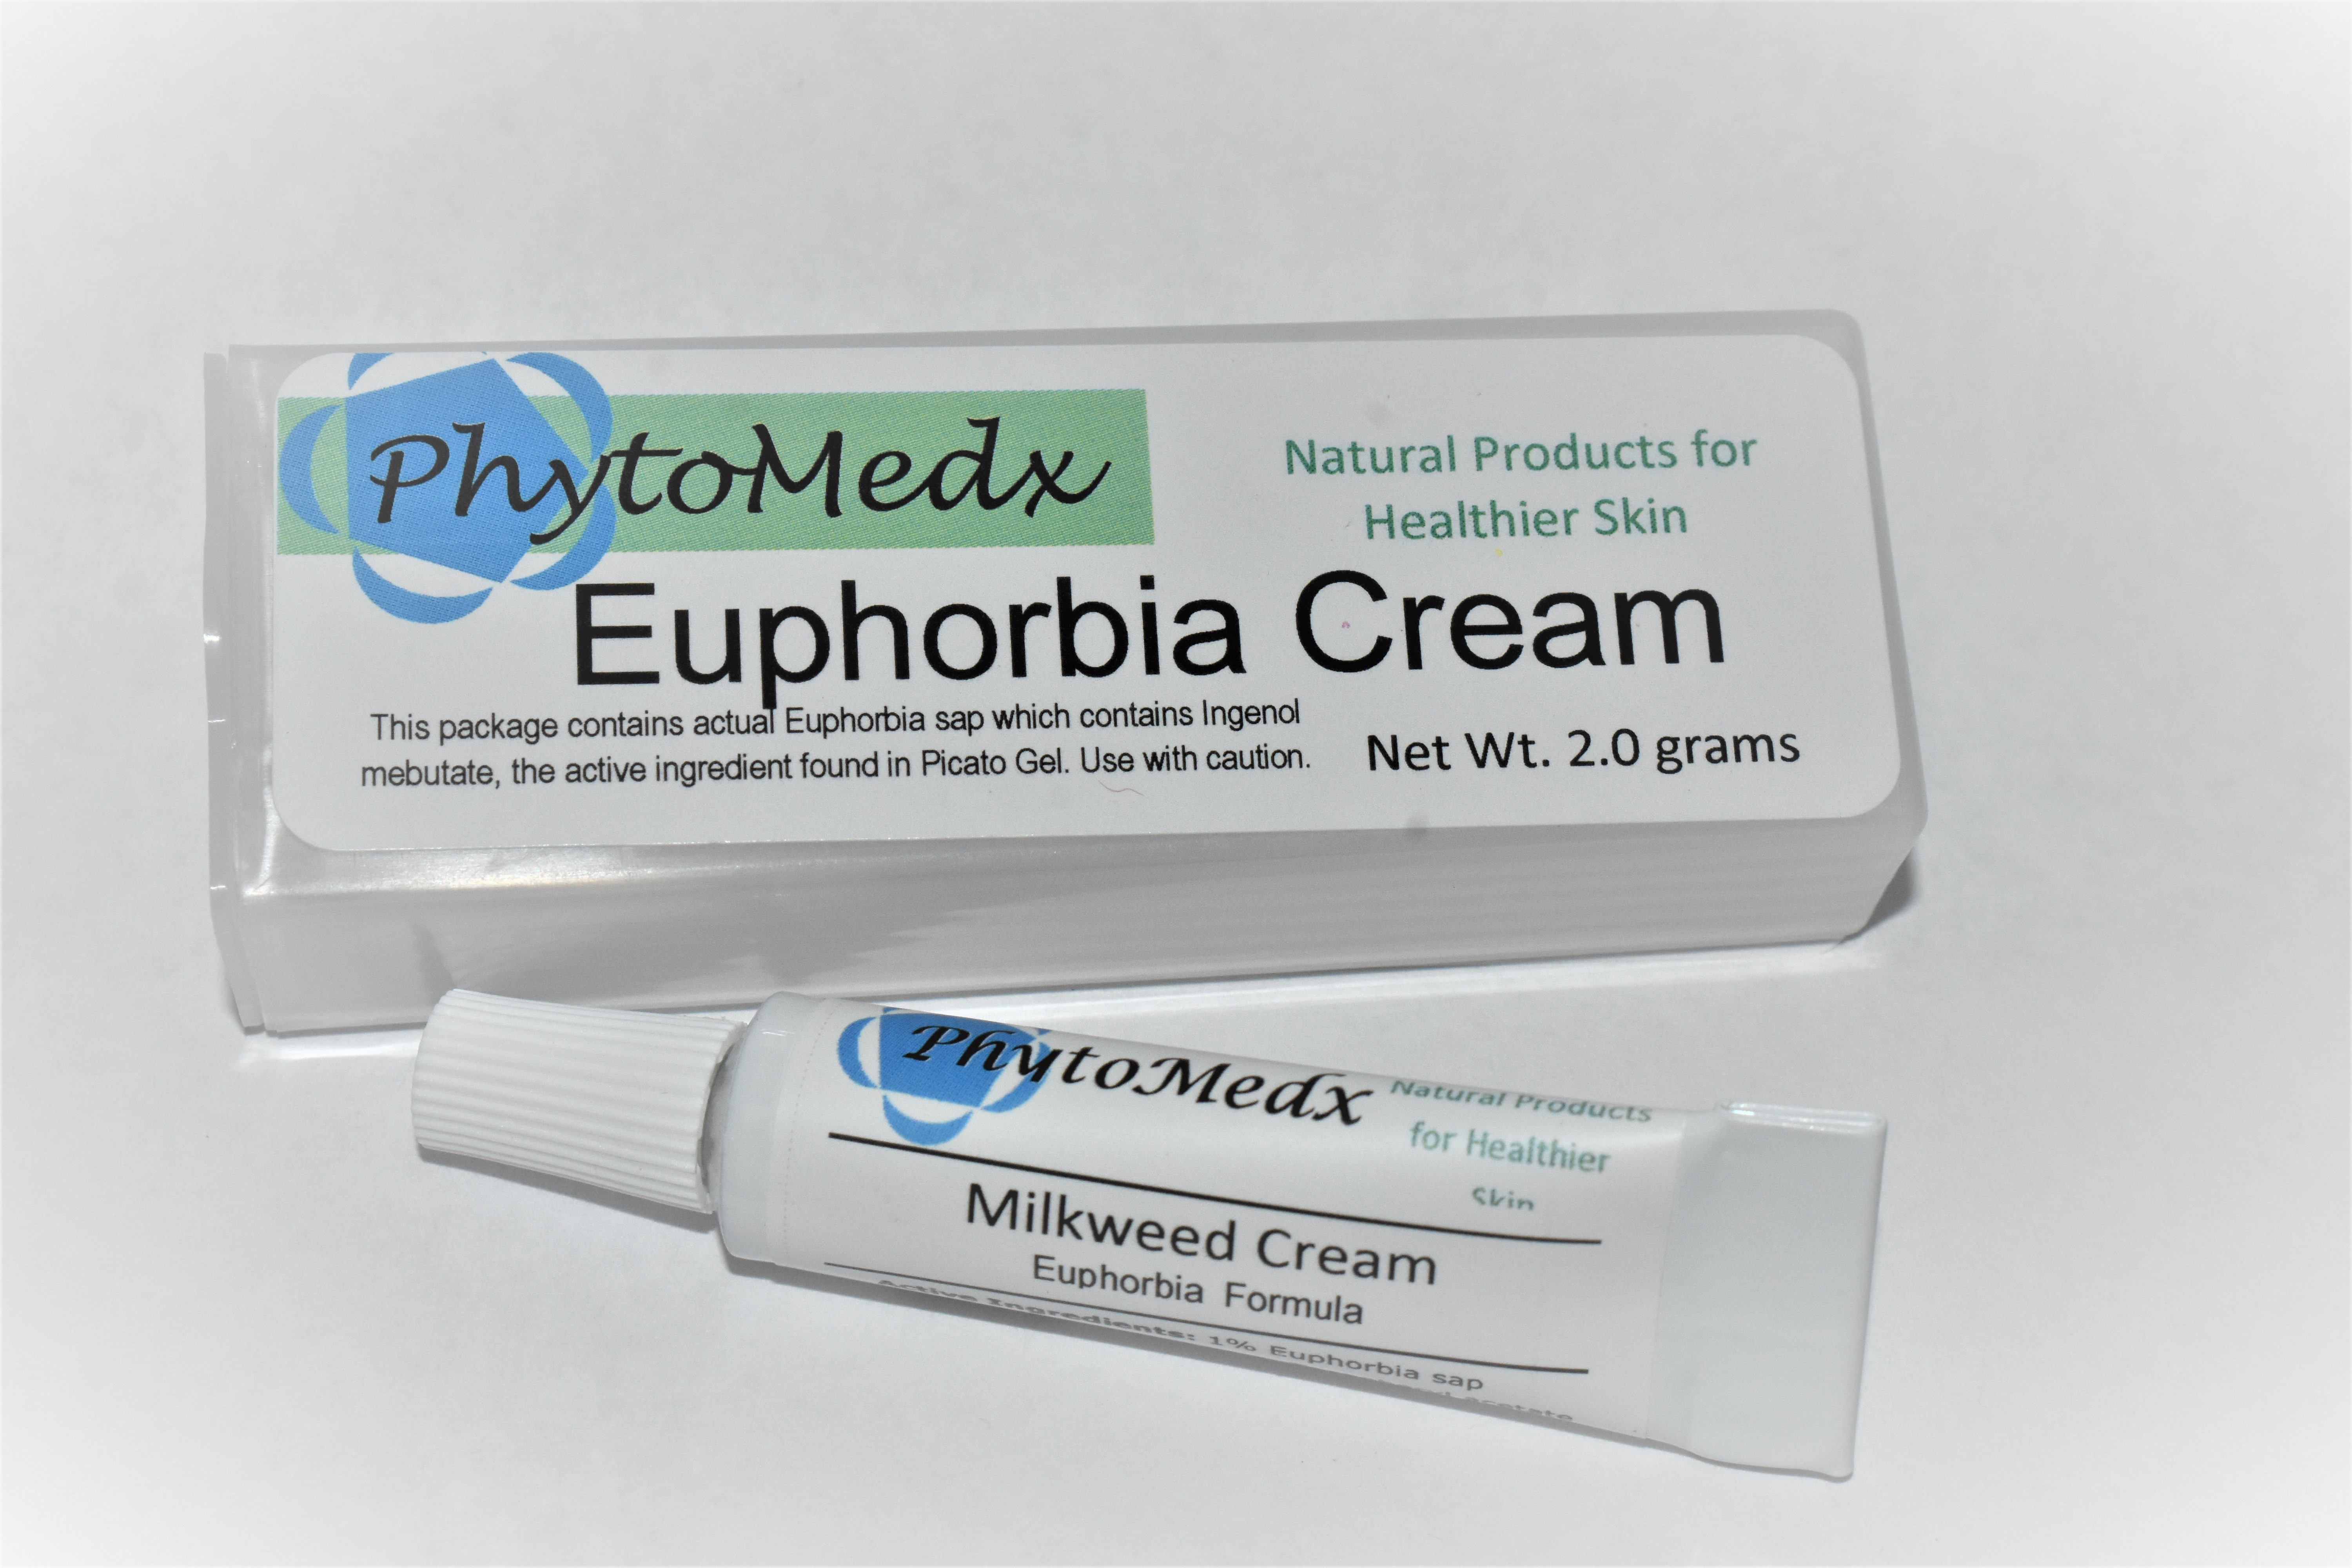 PhytoMedx Euphorbia Cream